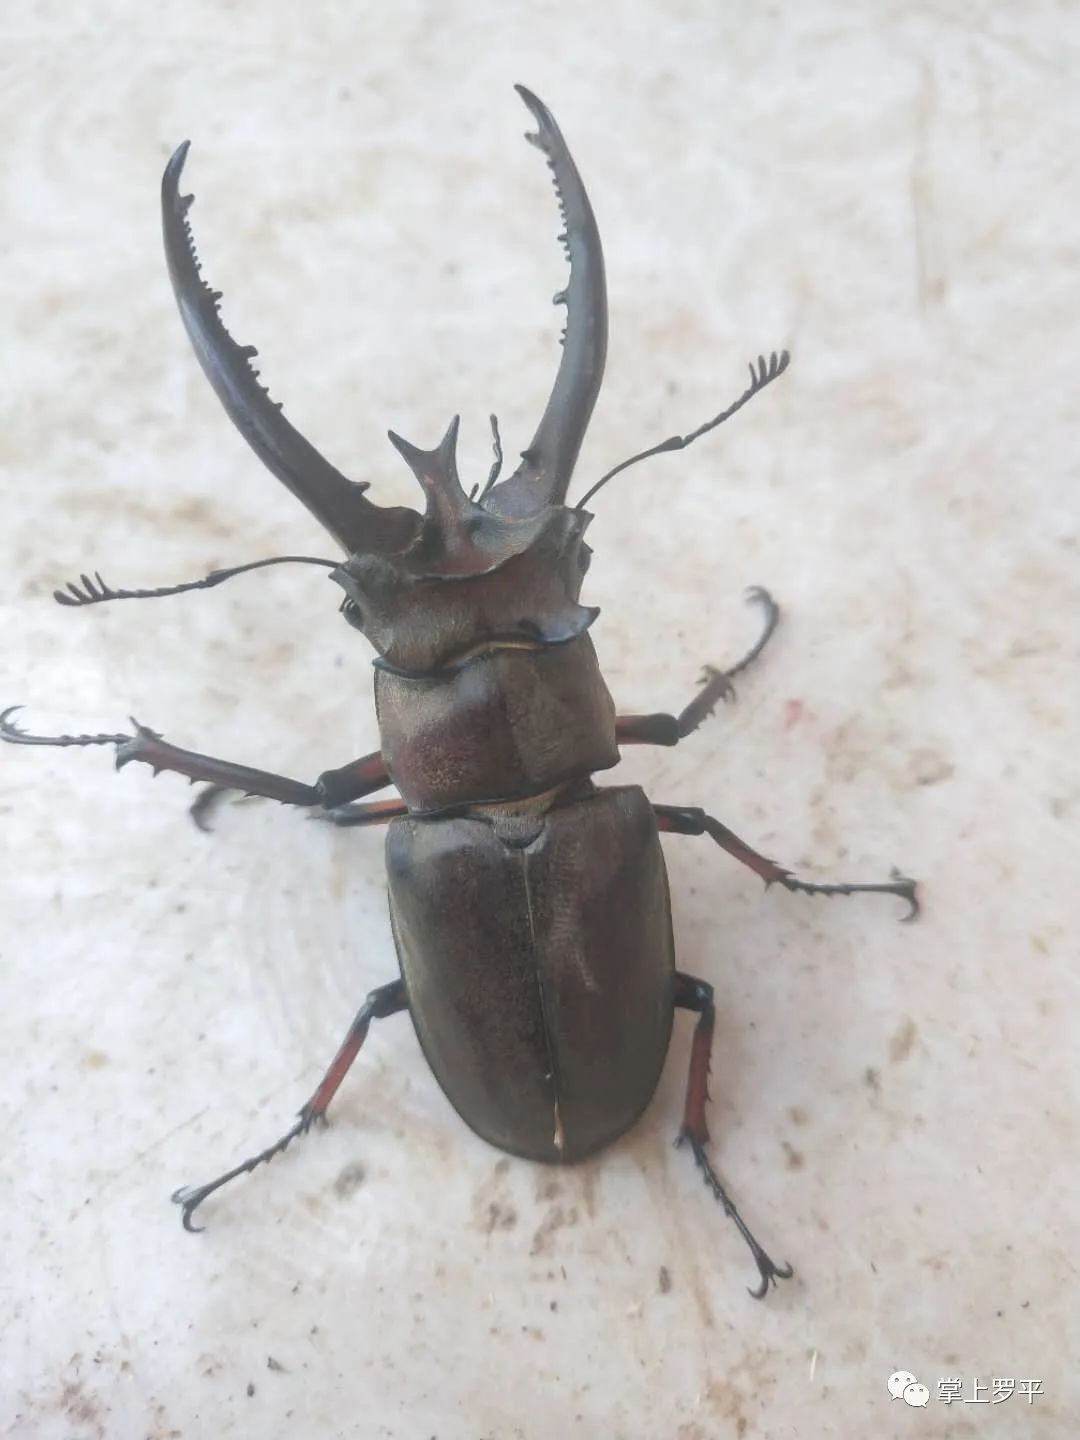 罗平一村民树林中发现大甲虫,体长约8cm头上长犄角!你